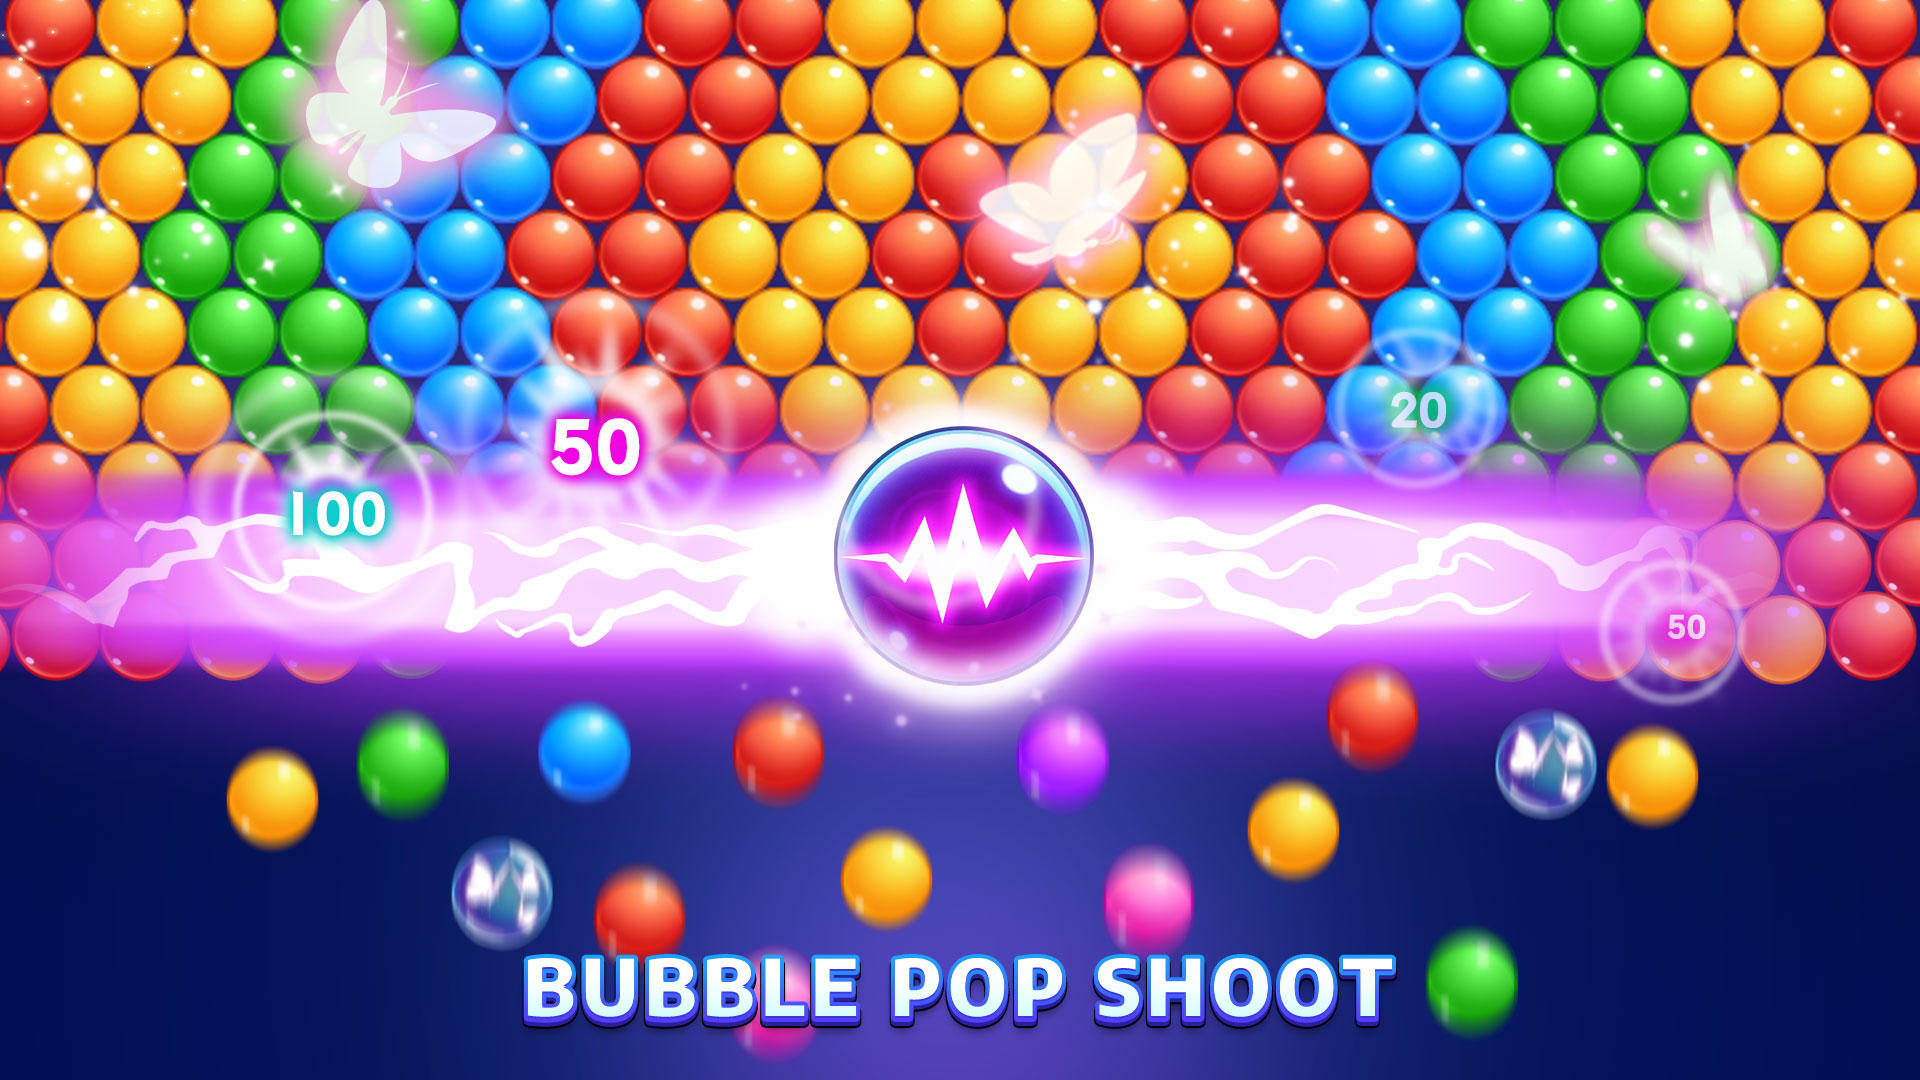 Bubble Shooter: Bubble Pet, Shoot & Pop Bubbles for Android - Download